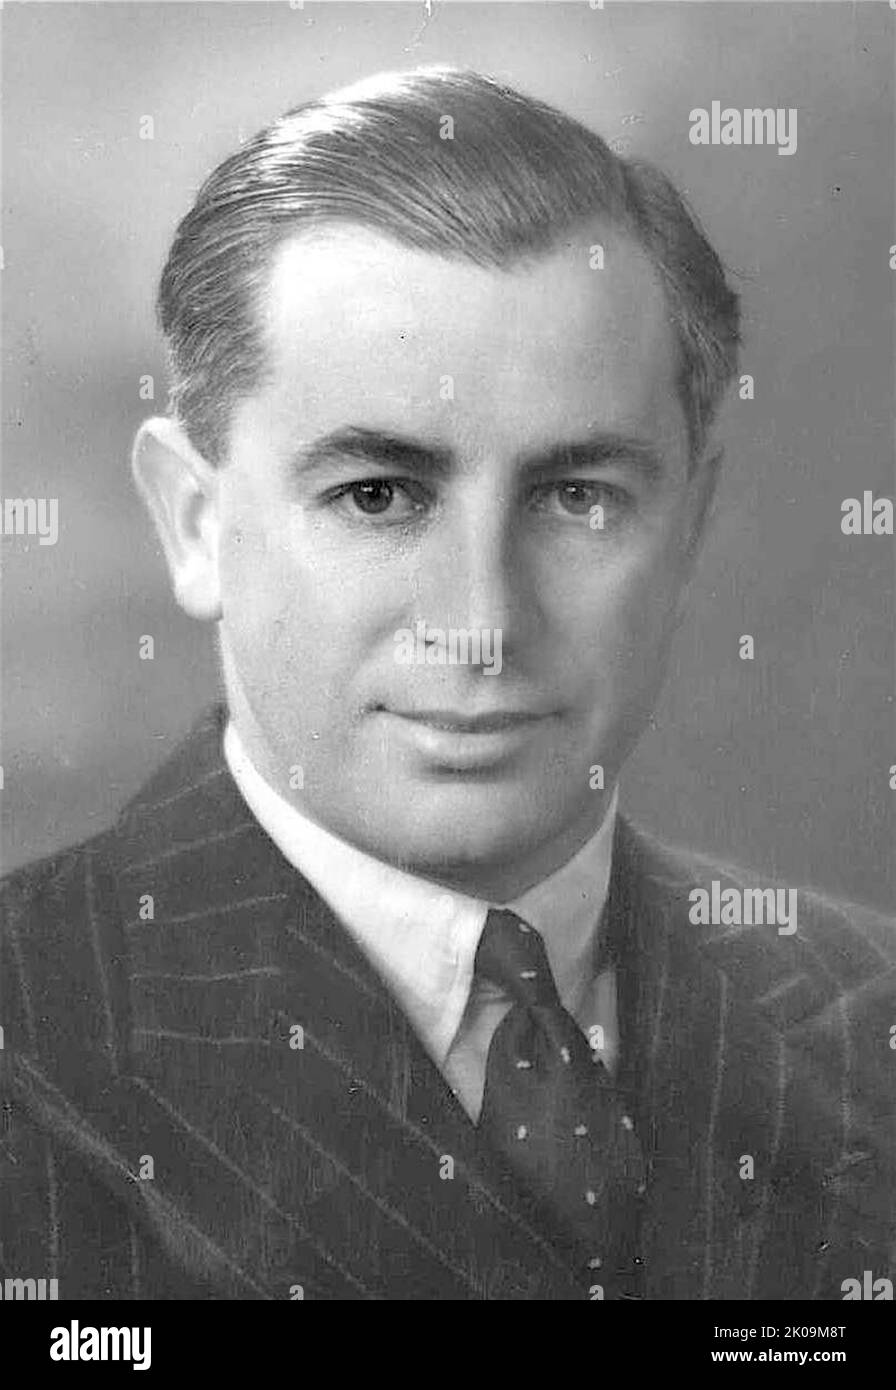 Harold Edward holt (5. August 1908 - 17. Dezember 1967) war ein australischer Politiker, der von 1966 bis zu seinem Verschwinden im Jahr 1967 als Premierminister von Australien 17. diente. Er hatte sein Amt als Vorsitzender der Liberalen Partei Australiens inne. Stockfoto